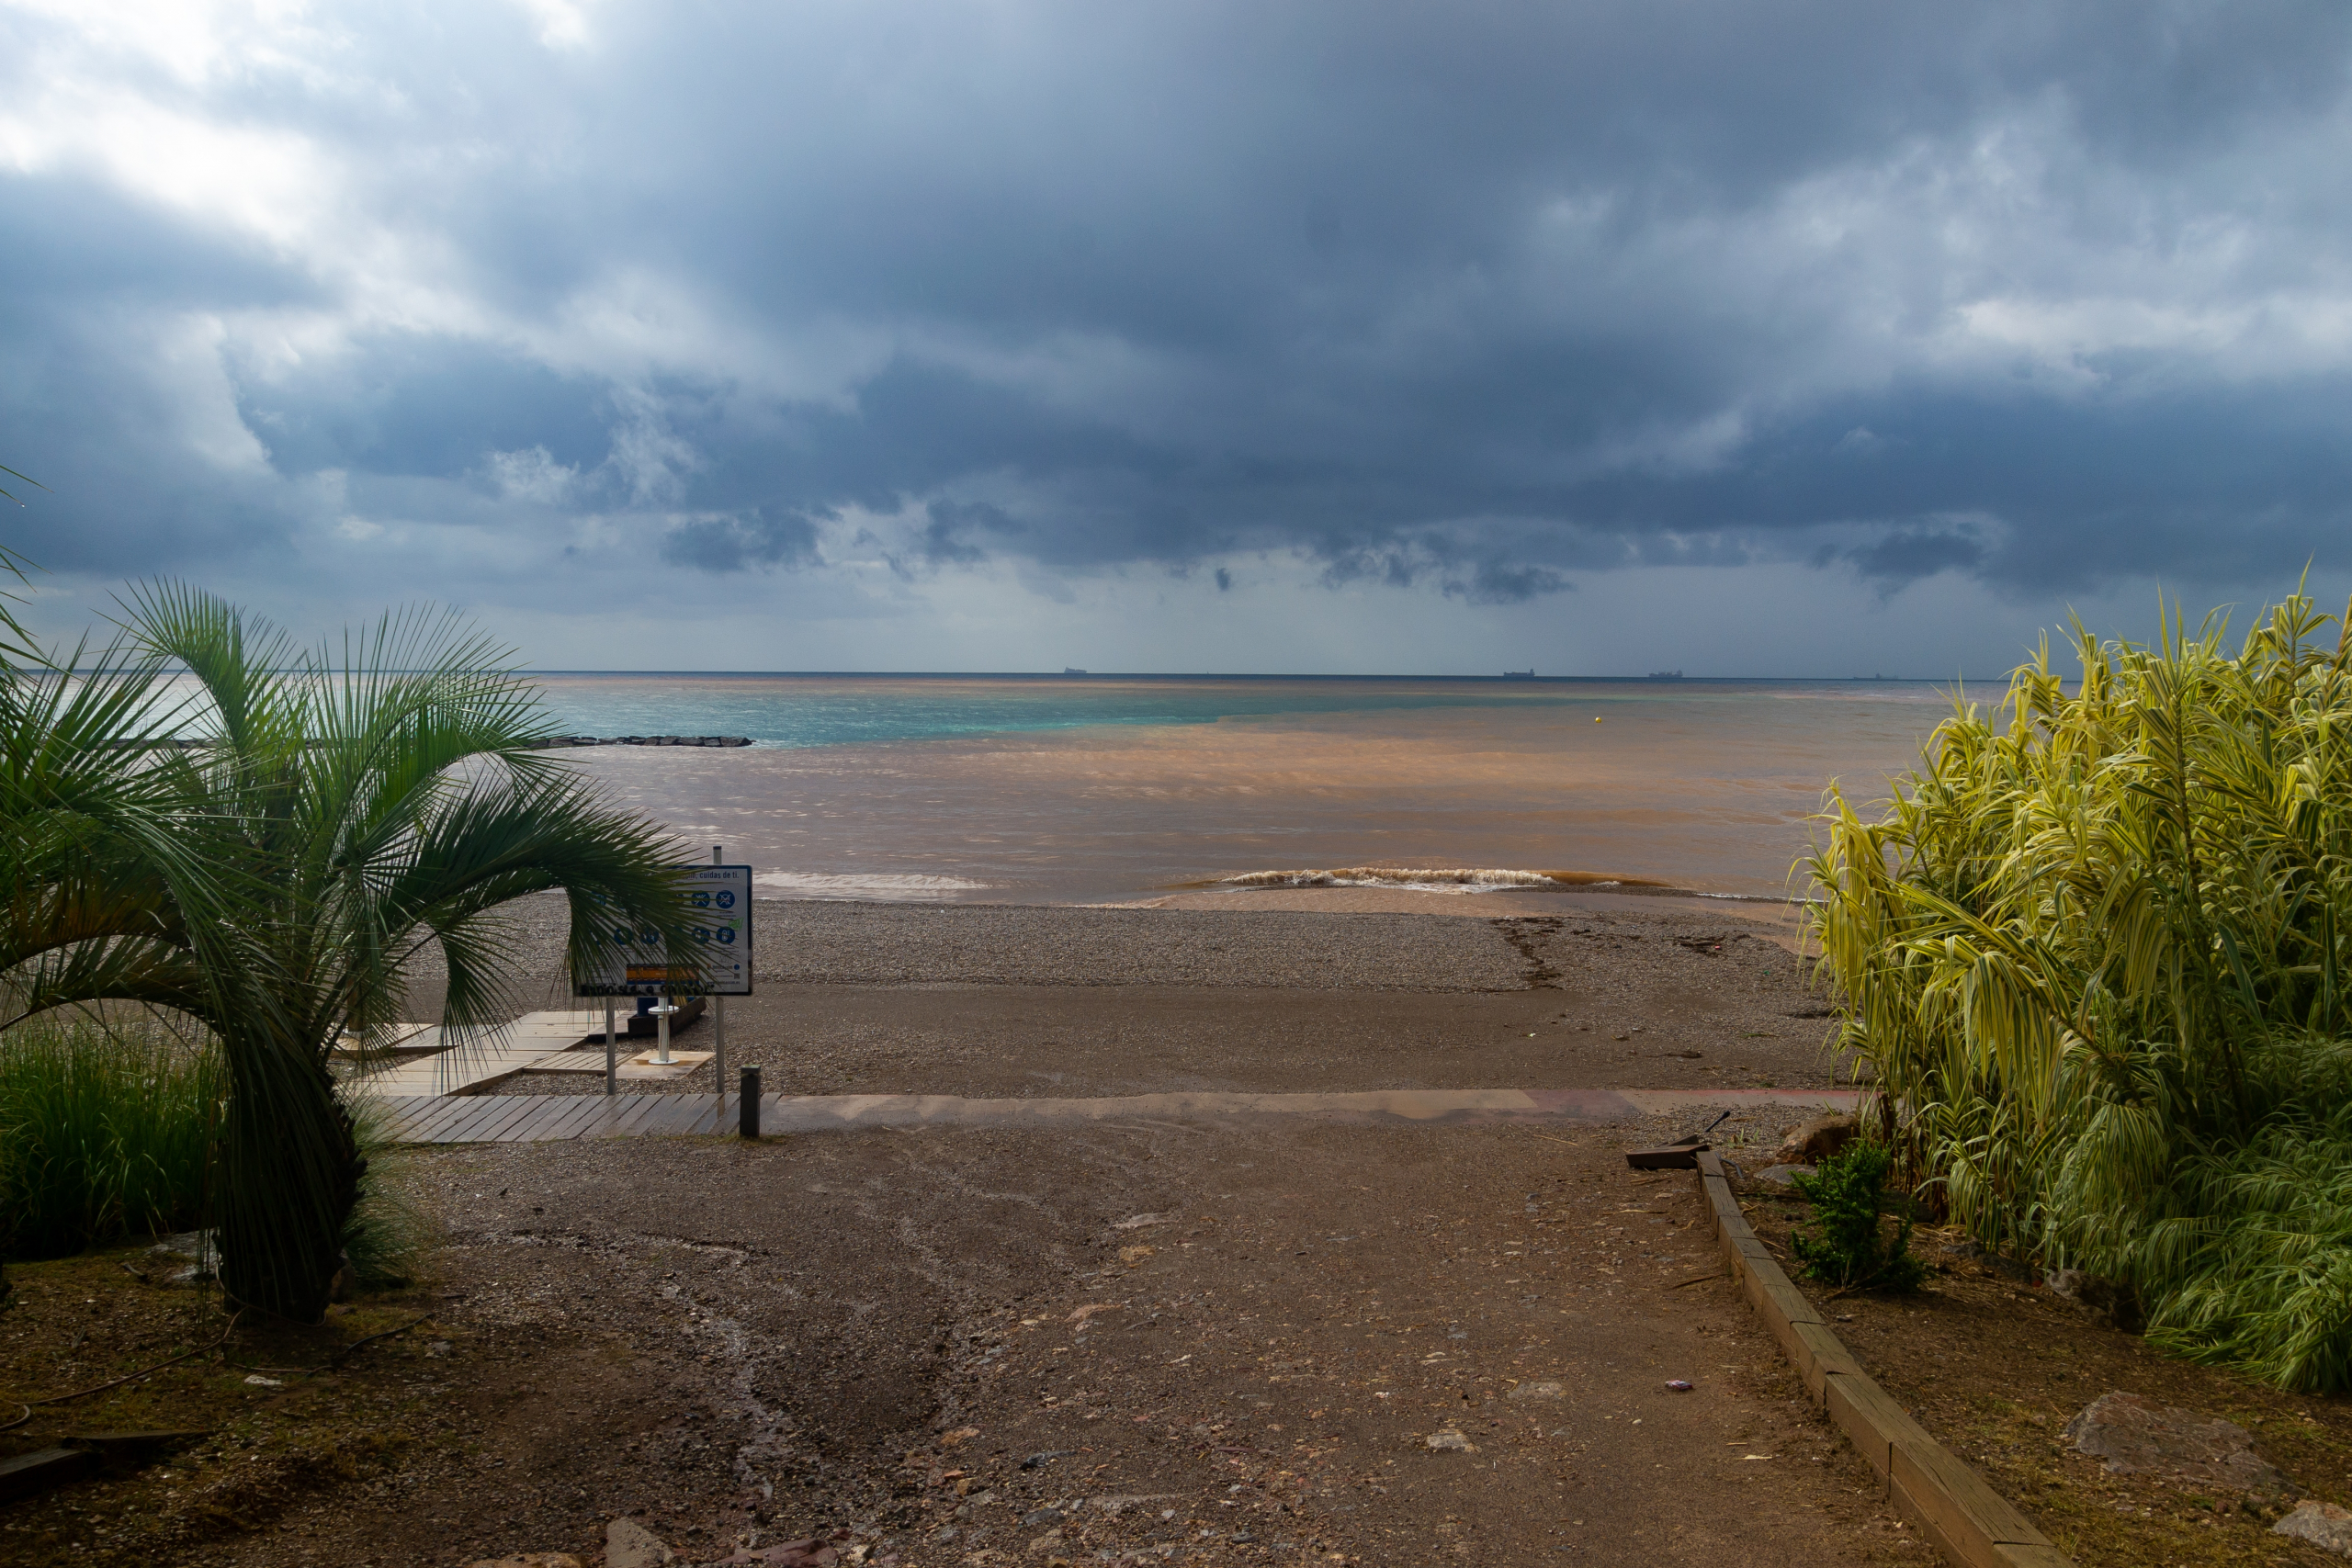 Da li su klimatske promene "krive" za stravične poplave u Libiji? U hladnijem svetu oluja se verovatno ne bi razvila tako brzo